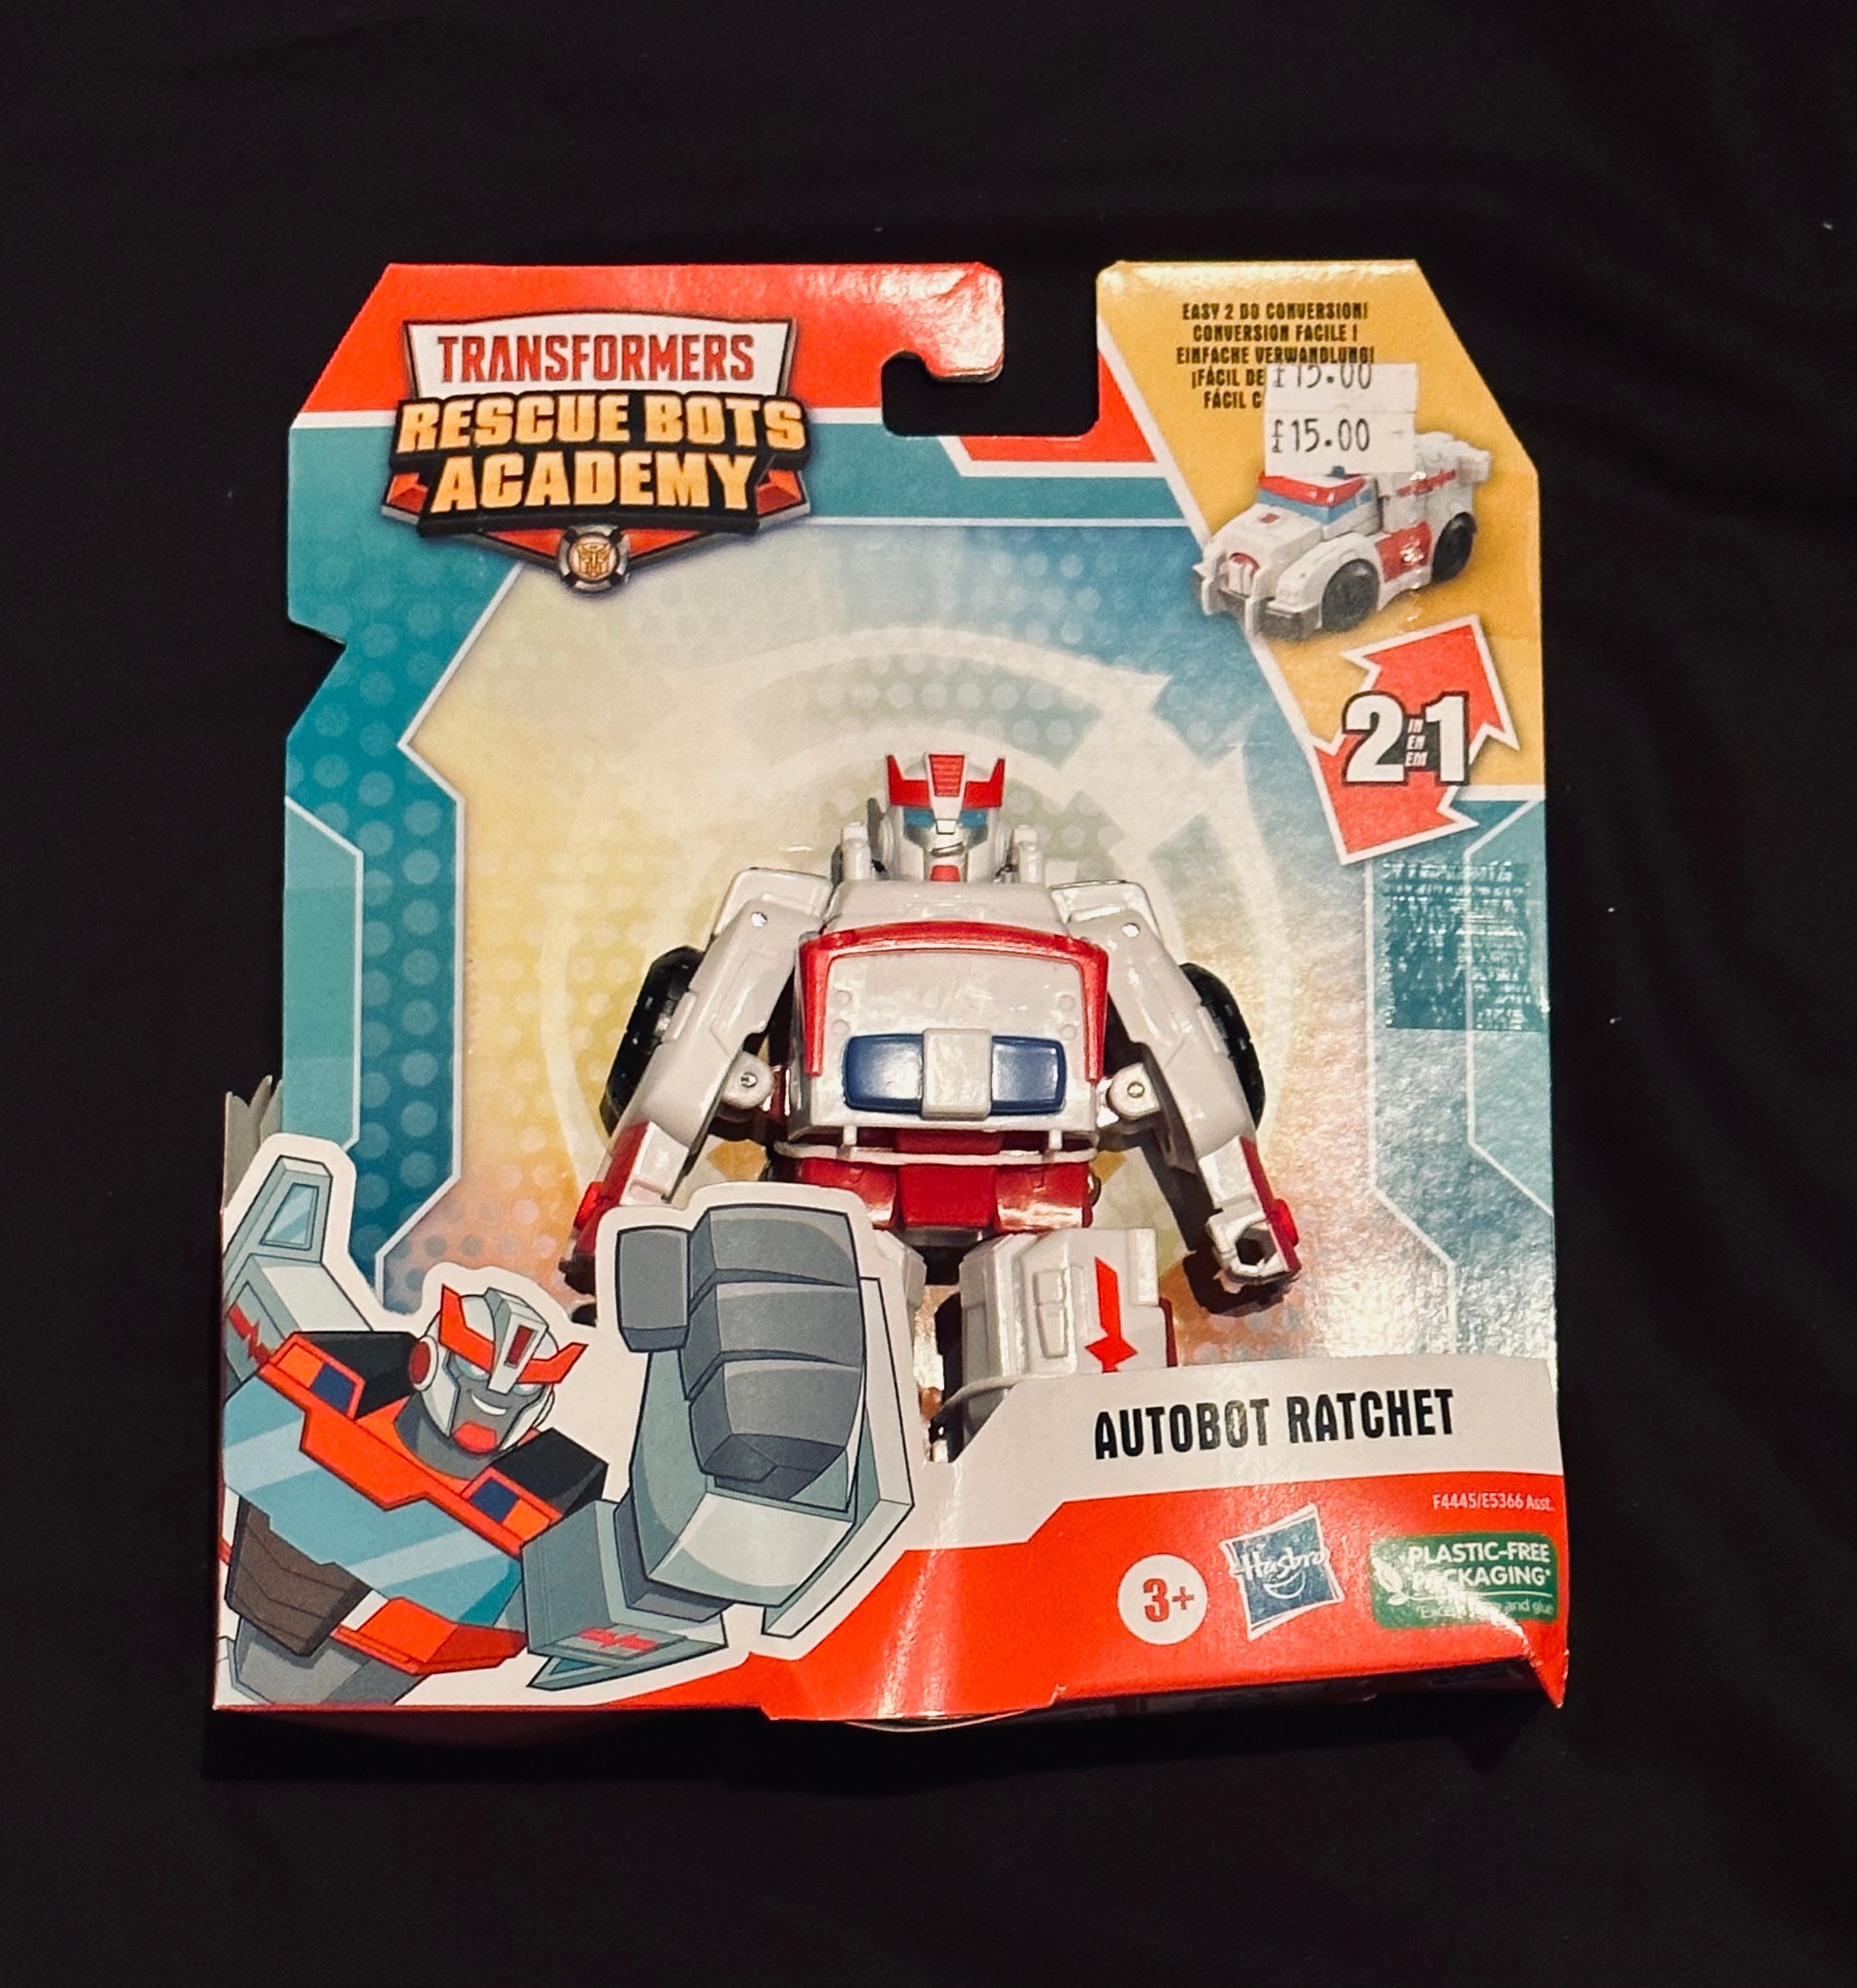 Transformers Rescue Bots Academy Autobot Ratchet – Blocknrolltoys